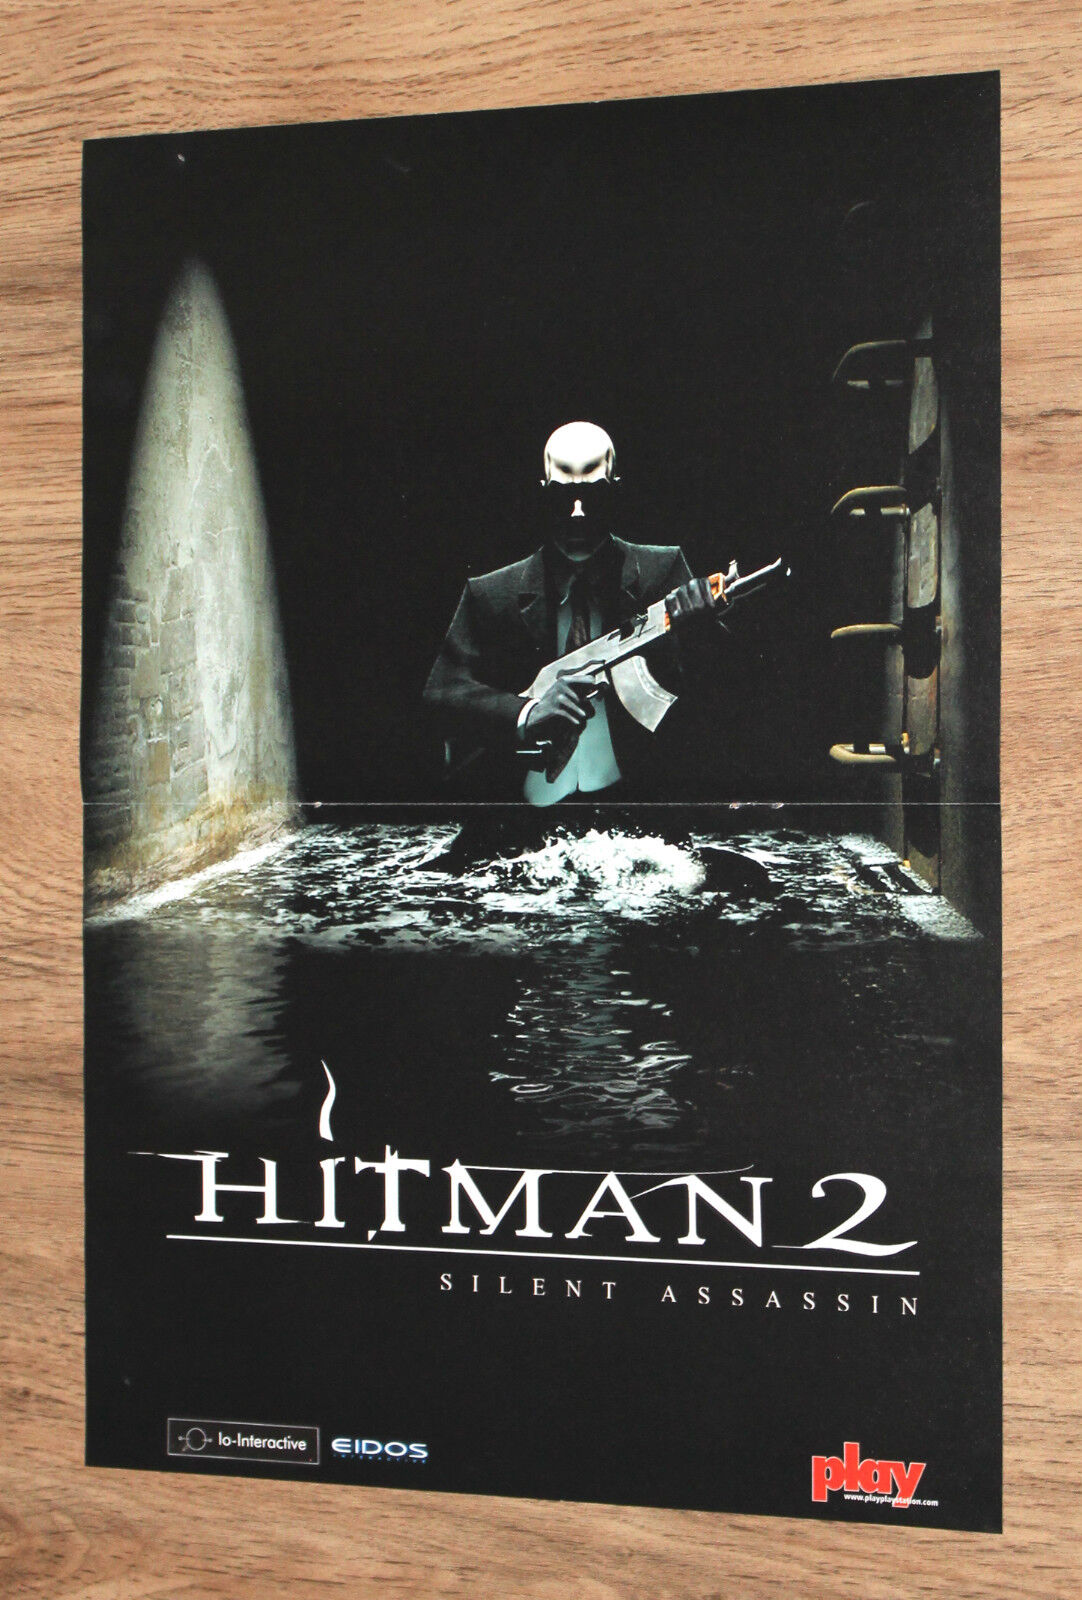 Hitman 2 Silent Assassin / Gran Turismo Concept very rare small Poster 30x42cm 